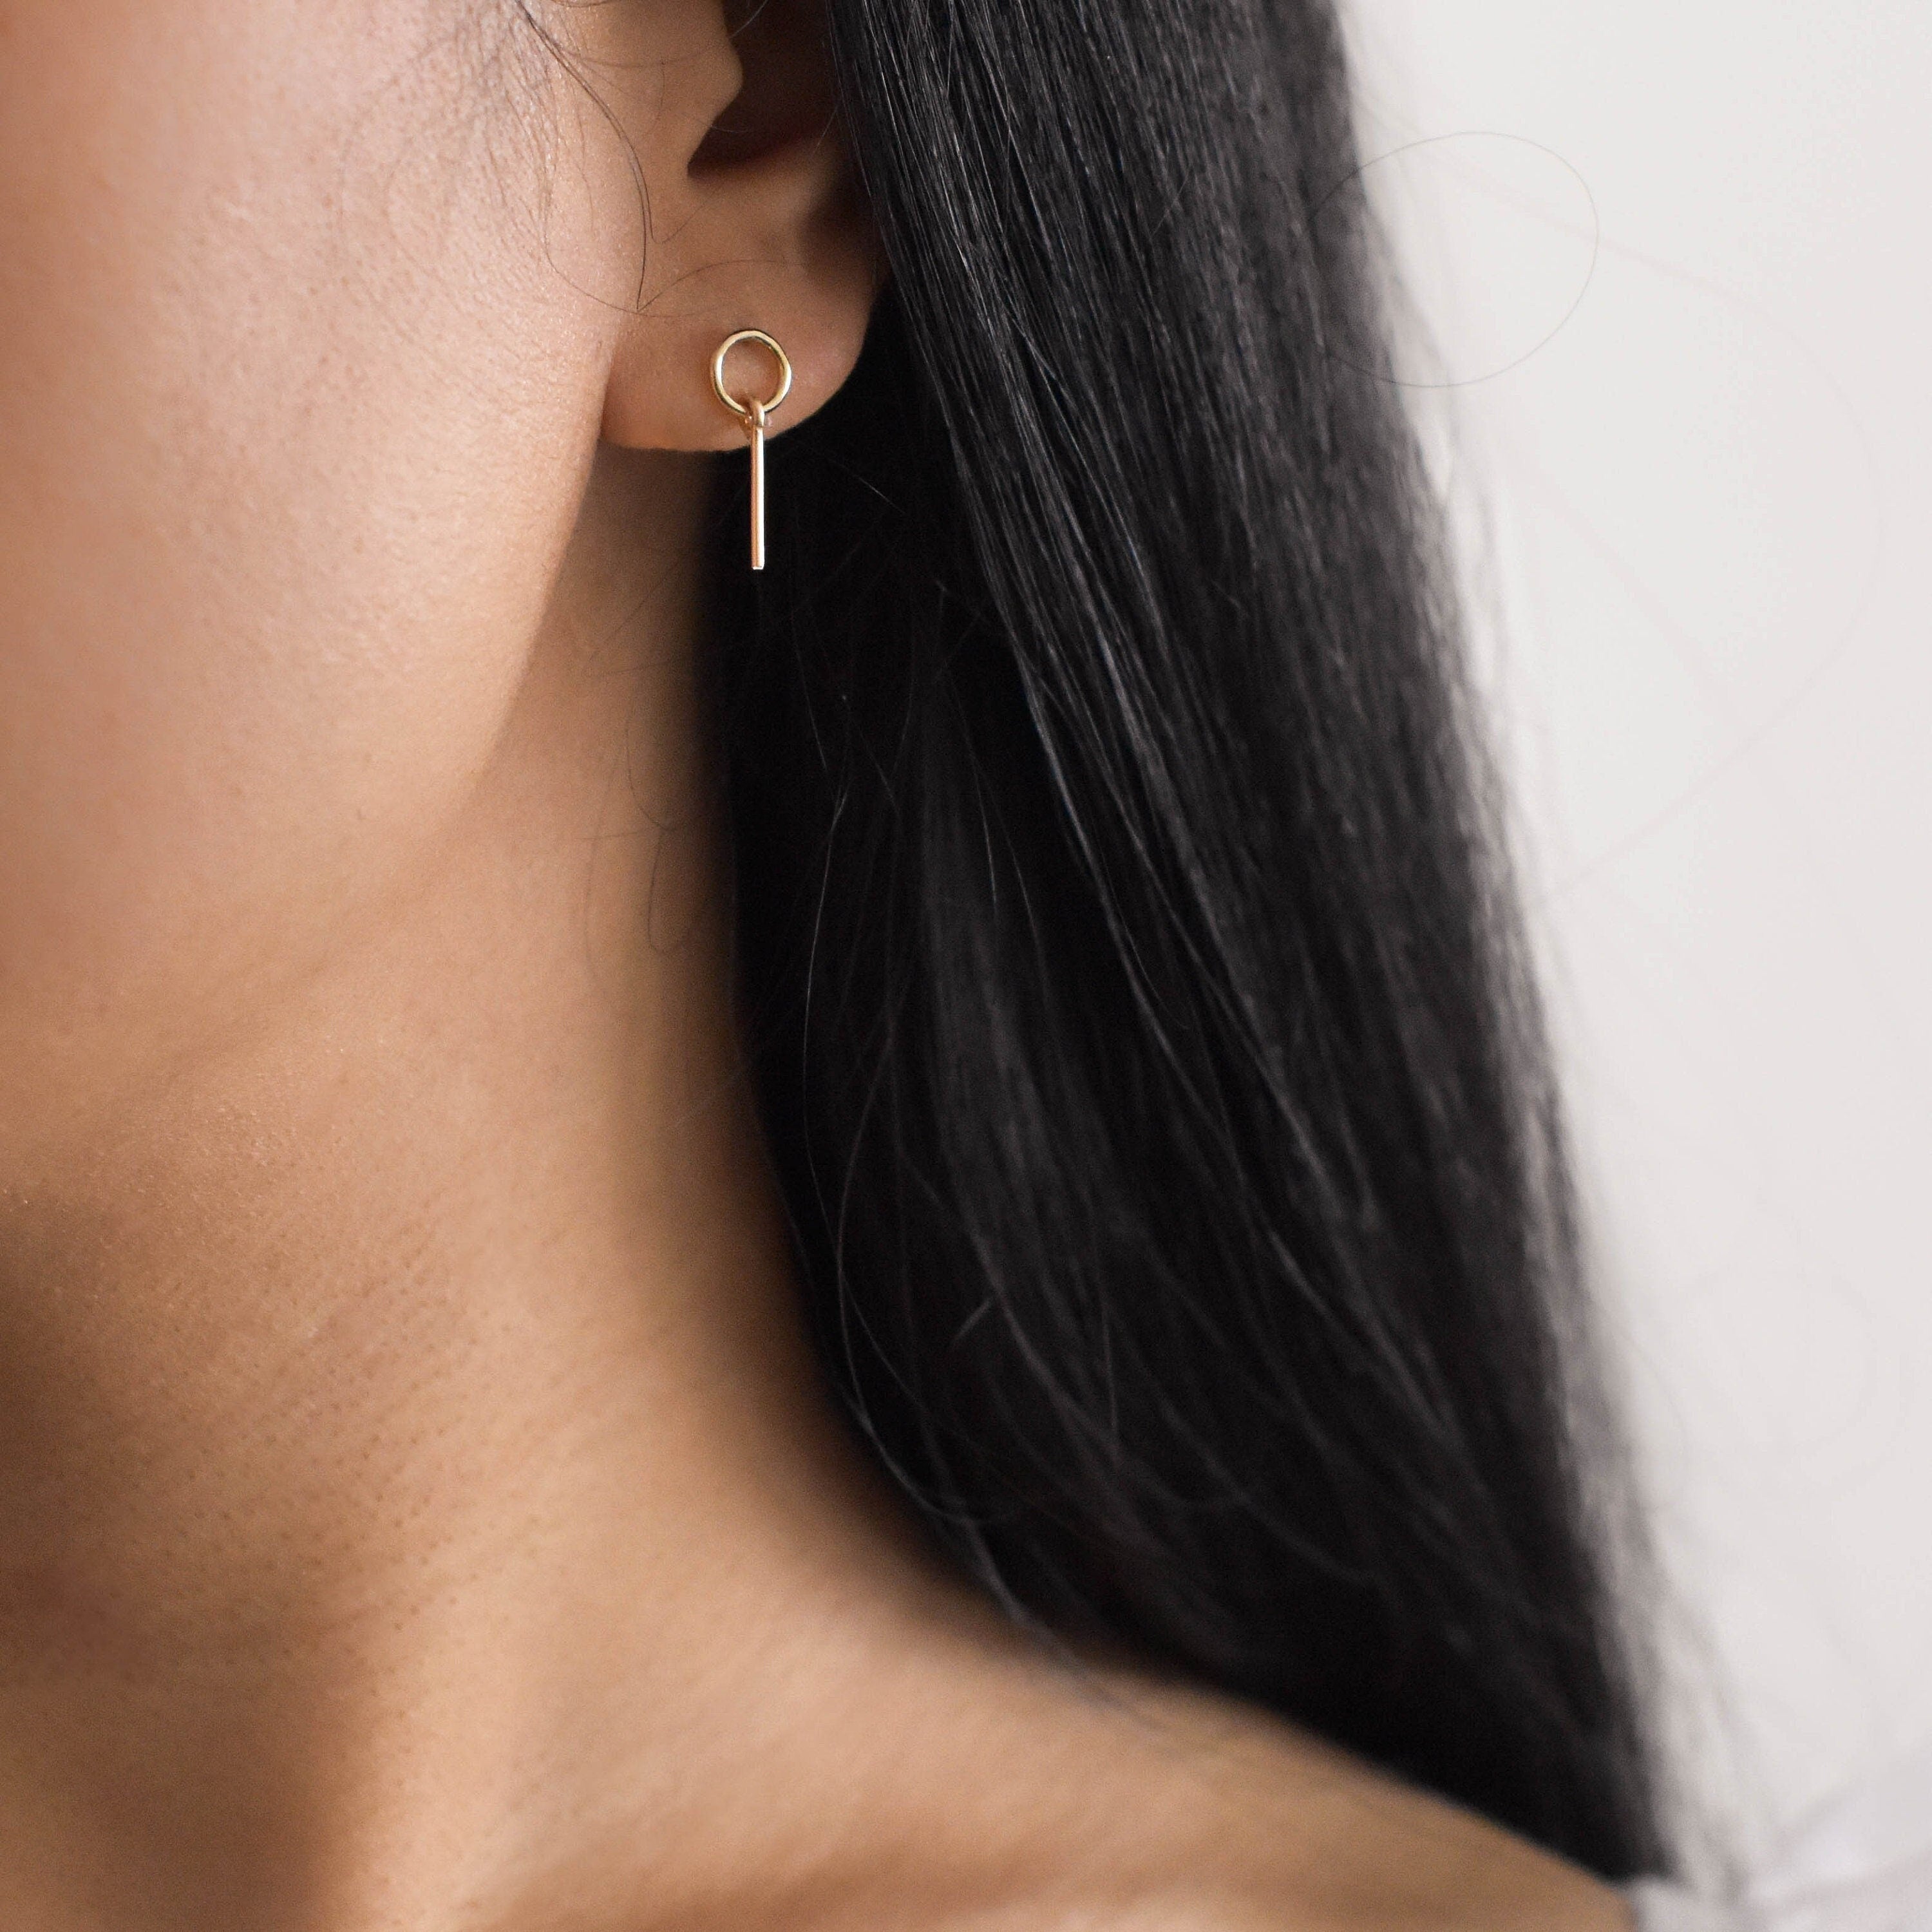 Bar Earrings - Dainty Earrings, Gold filled earrings, simple earrings, small earrings, small dangle earrings, daily earrings |GFE00052